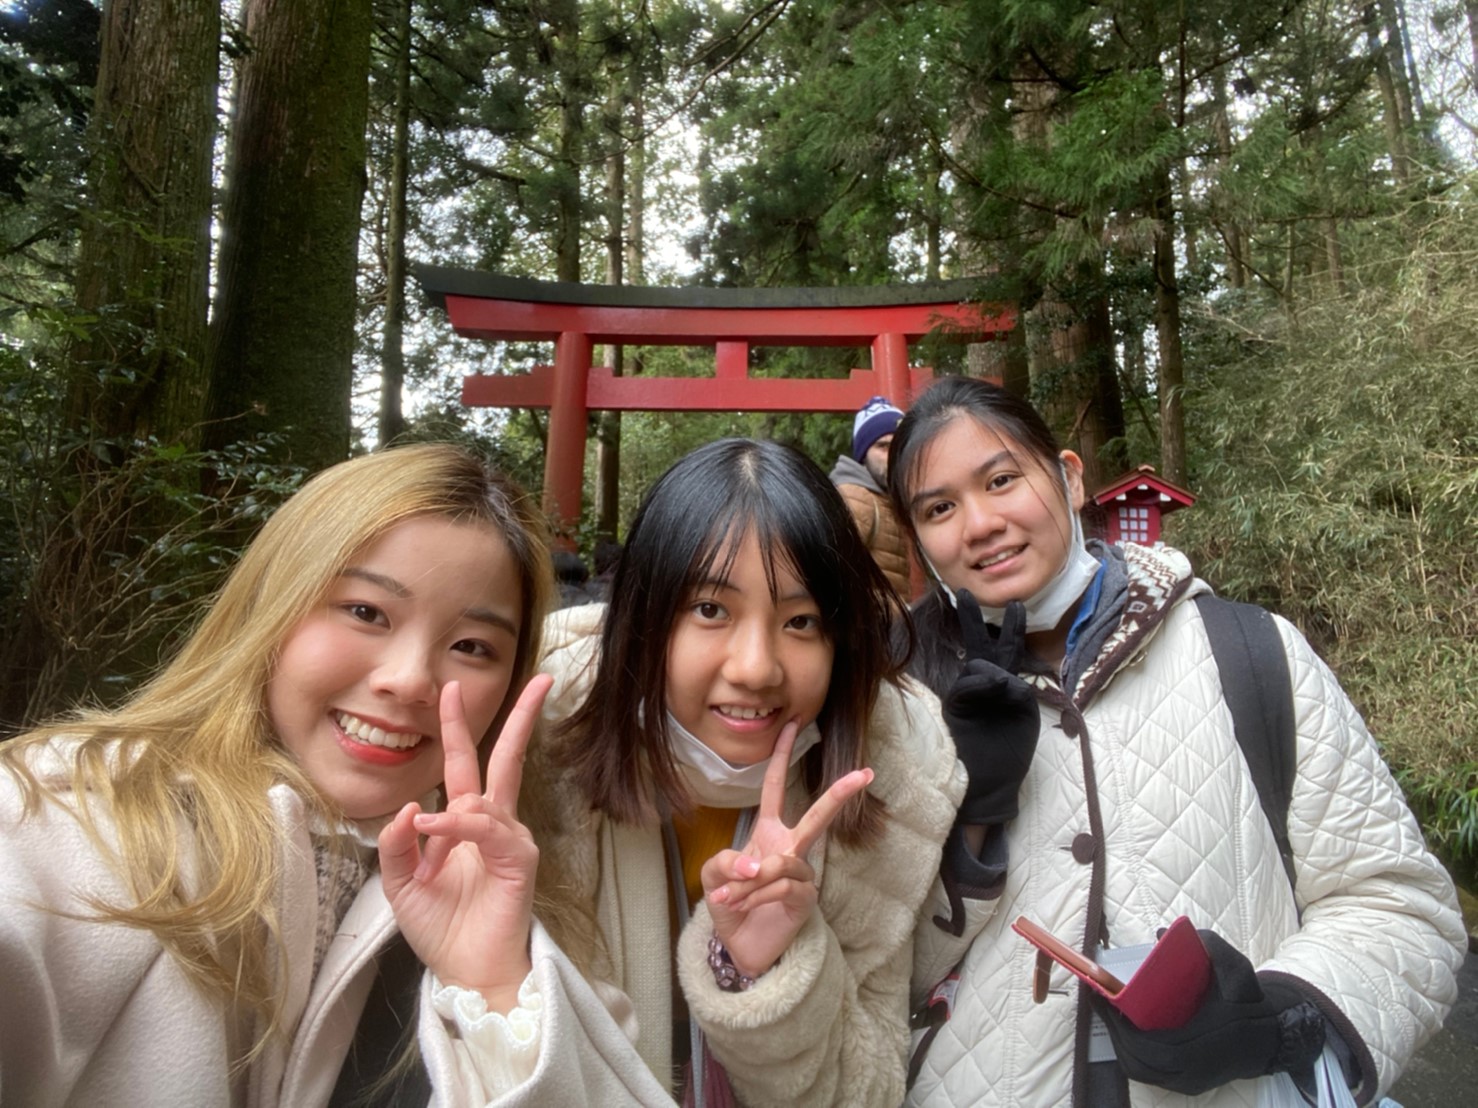 「第7回 日本体験旅行レポート 」 การเดินทางของผู้ชนะการประกวดความสามารถทางด้านภาษาญี่ปุ่น ครั้งที่ 7 25/01/2020